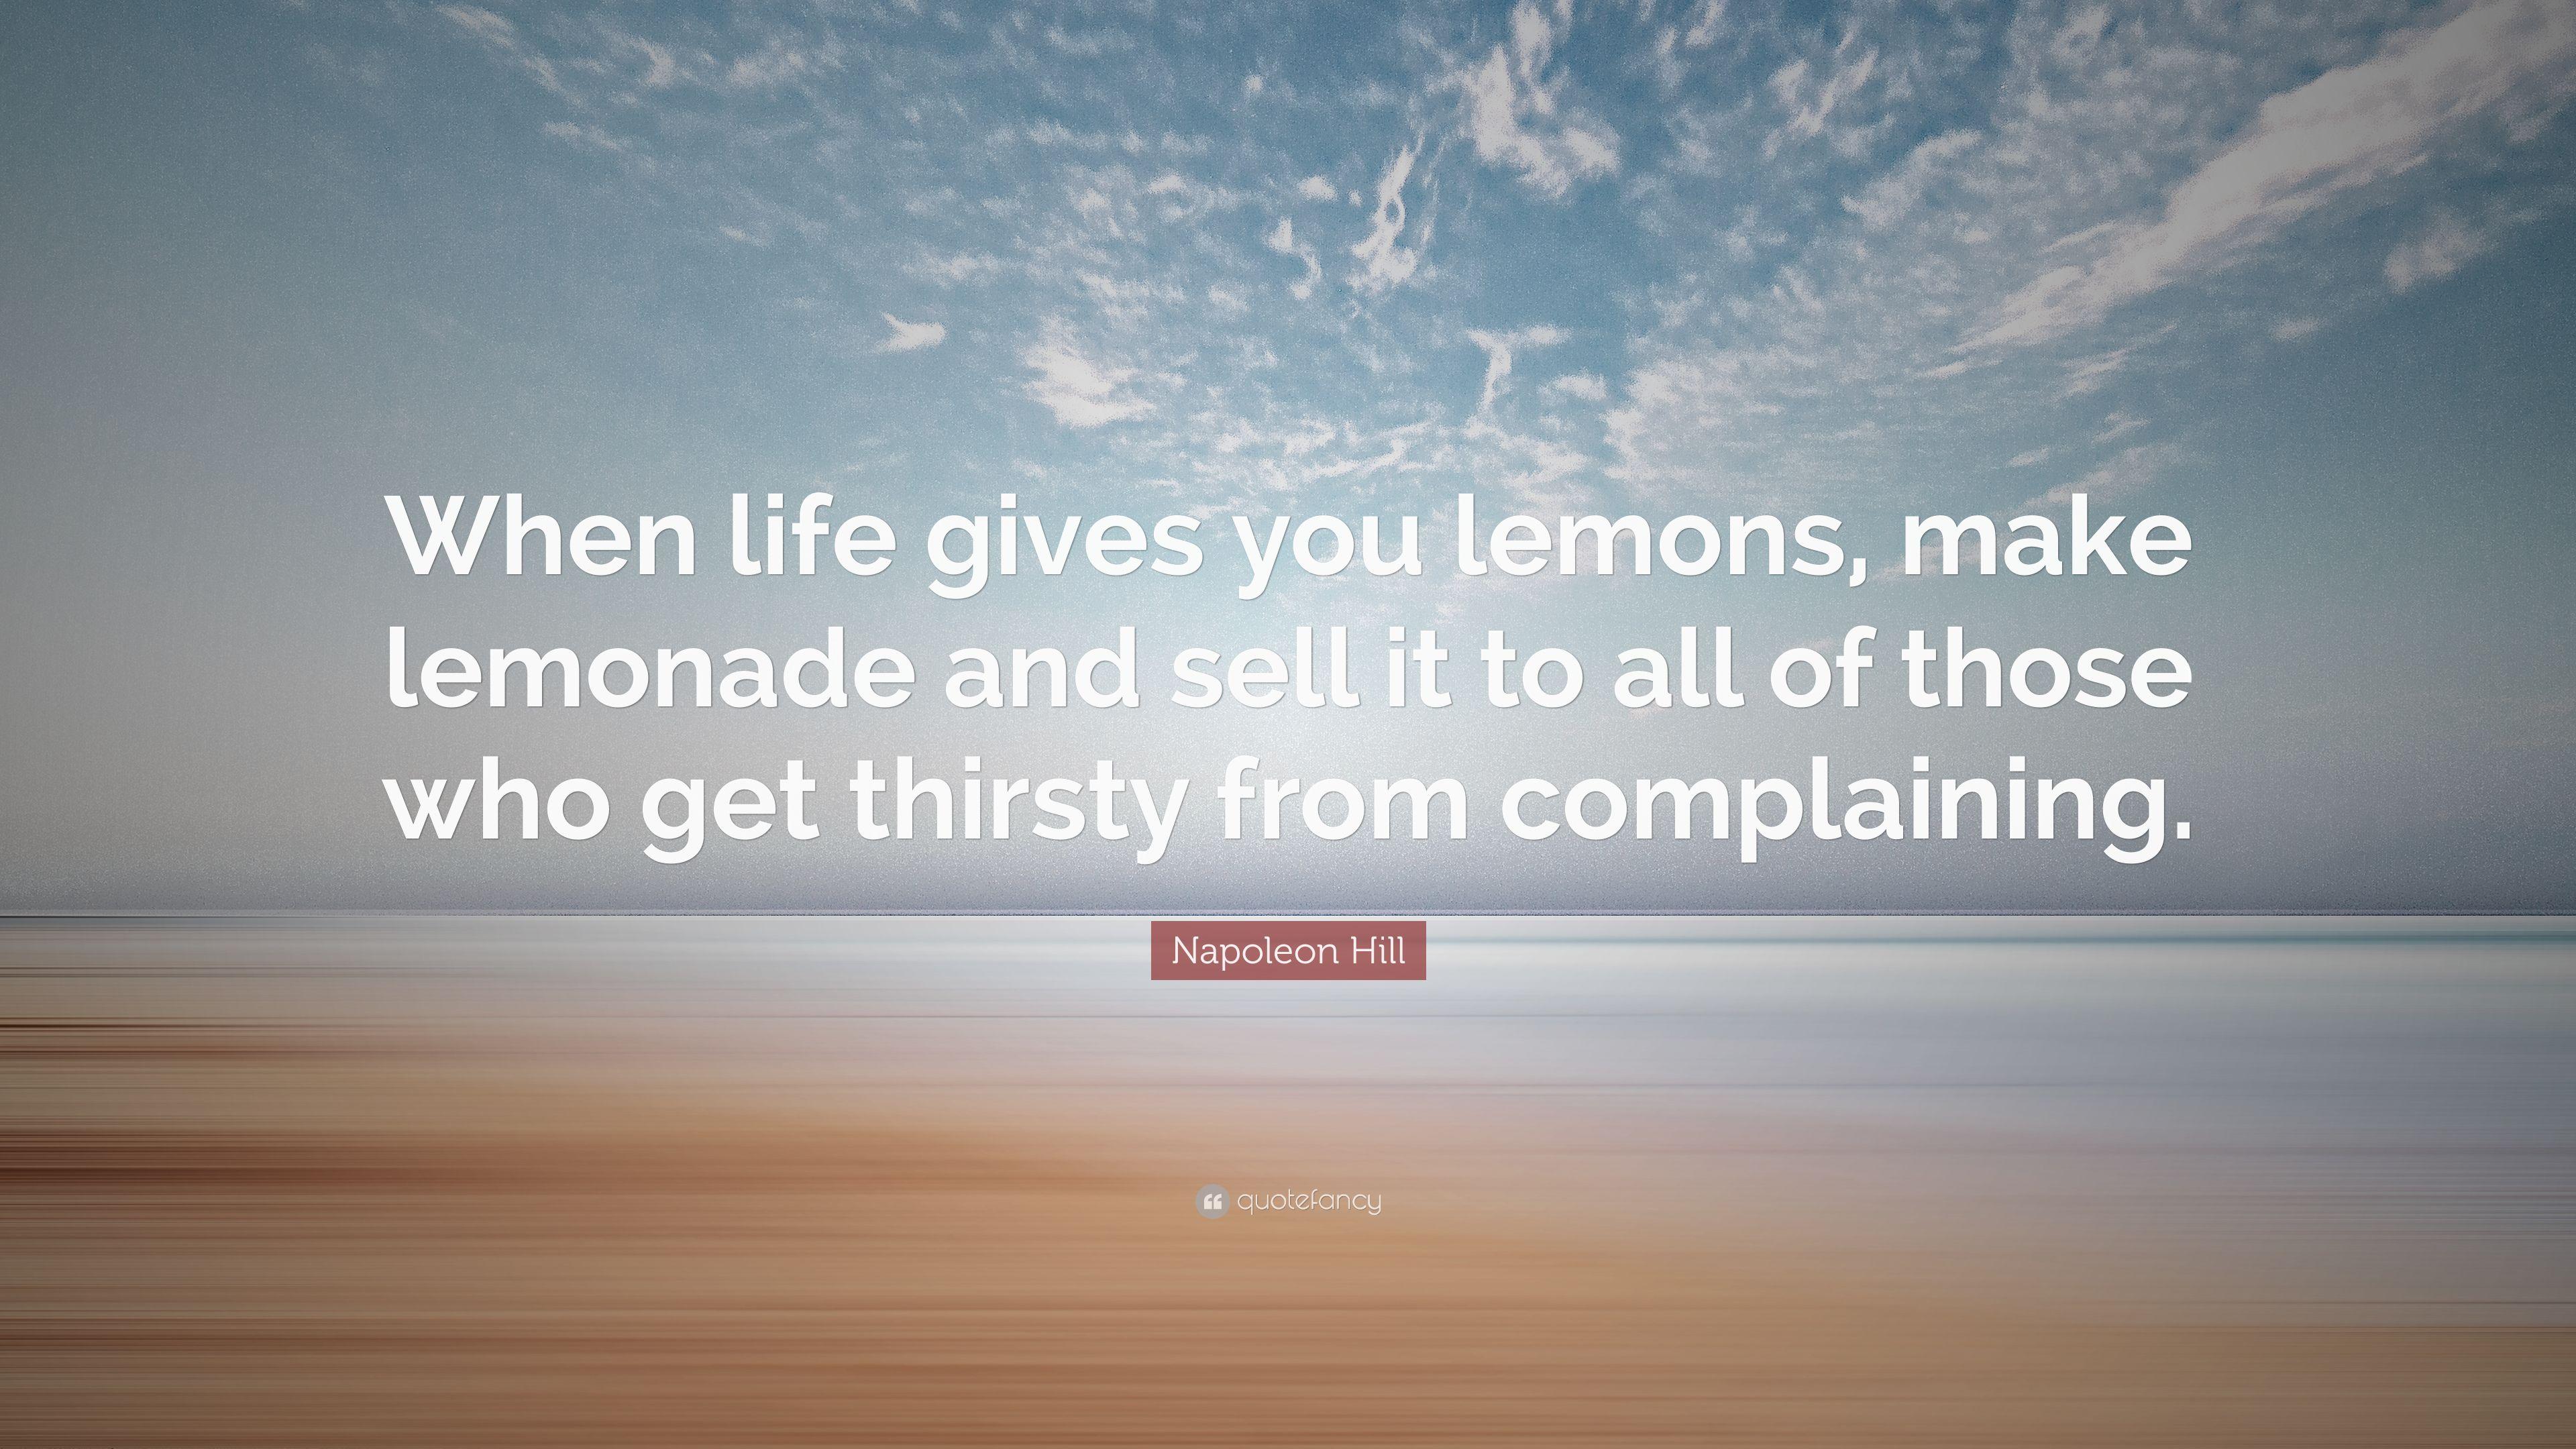 Napoleon Hill Quote: “When life gives you lemons, make lemonade